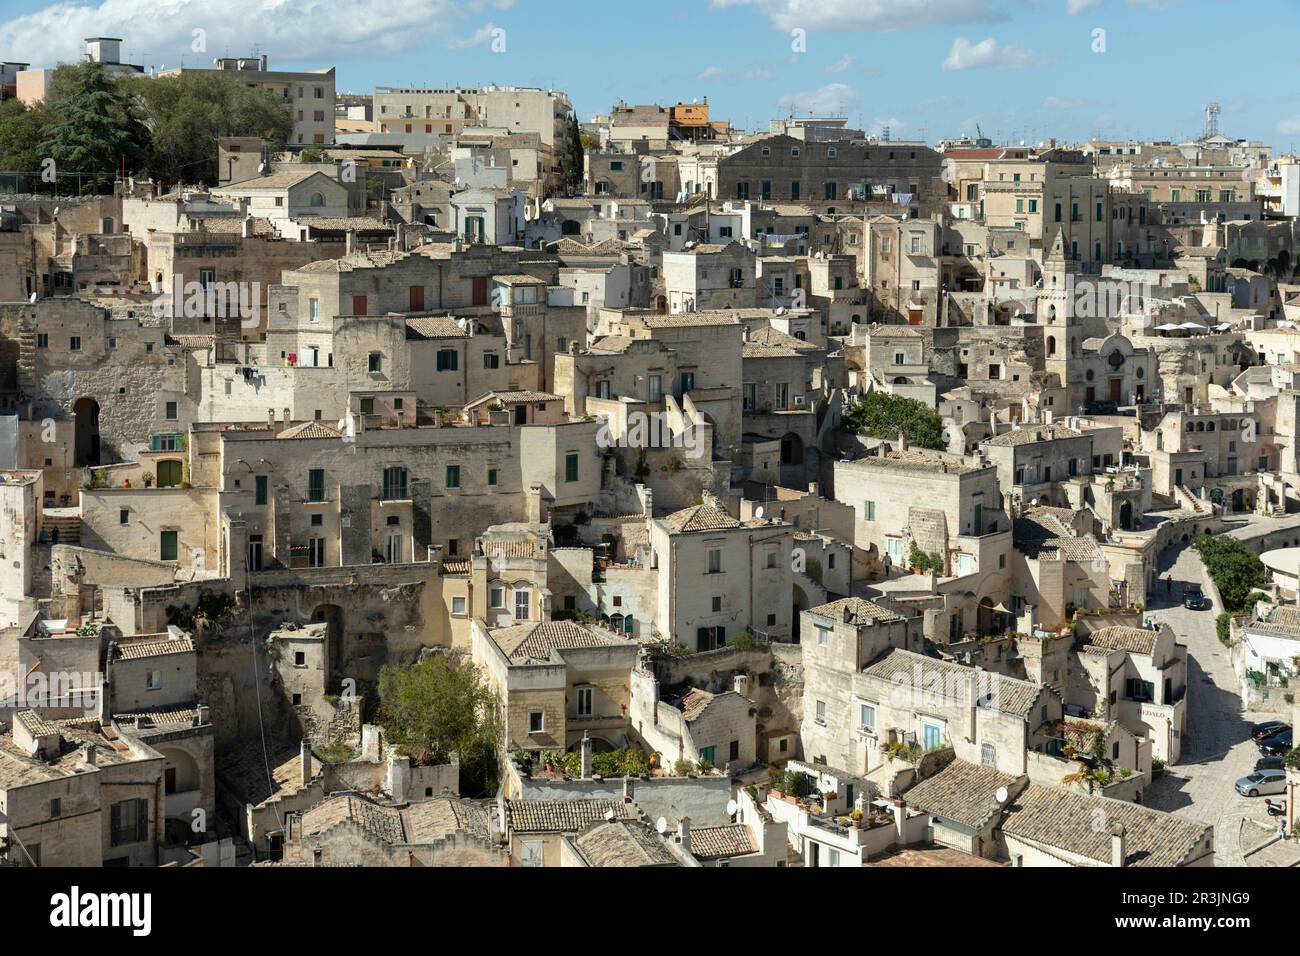 La histórica ciudad de Matera en el sur de Italia Foto de stock